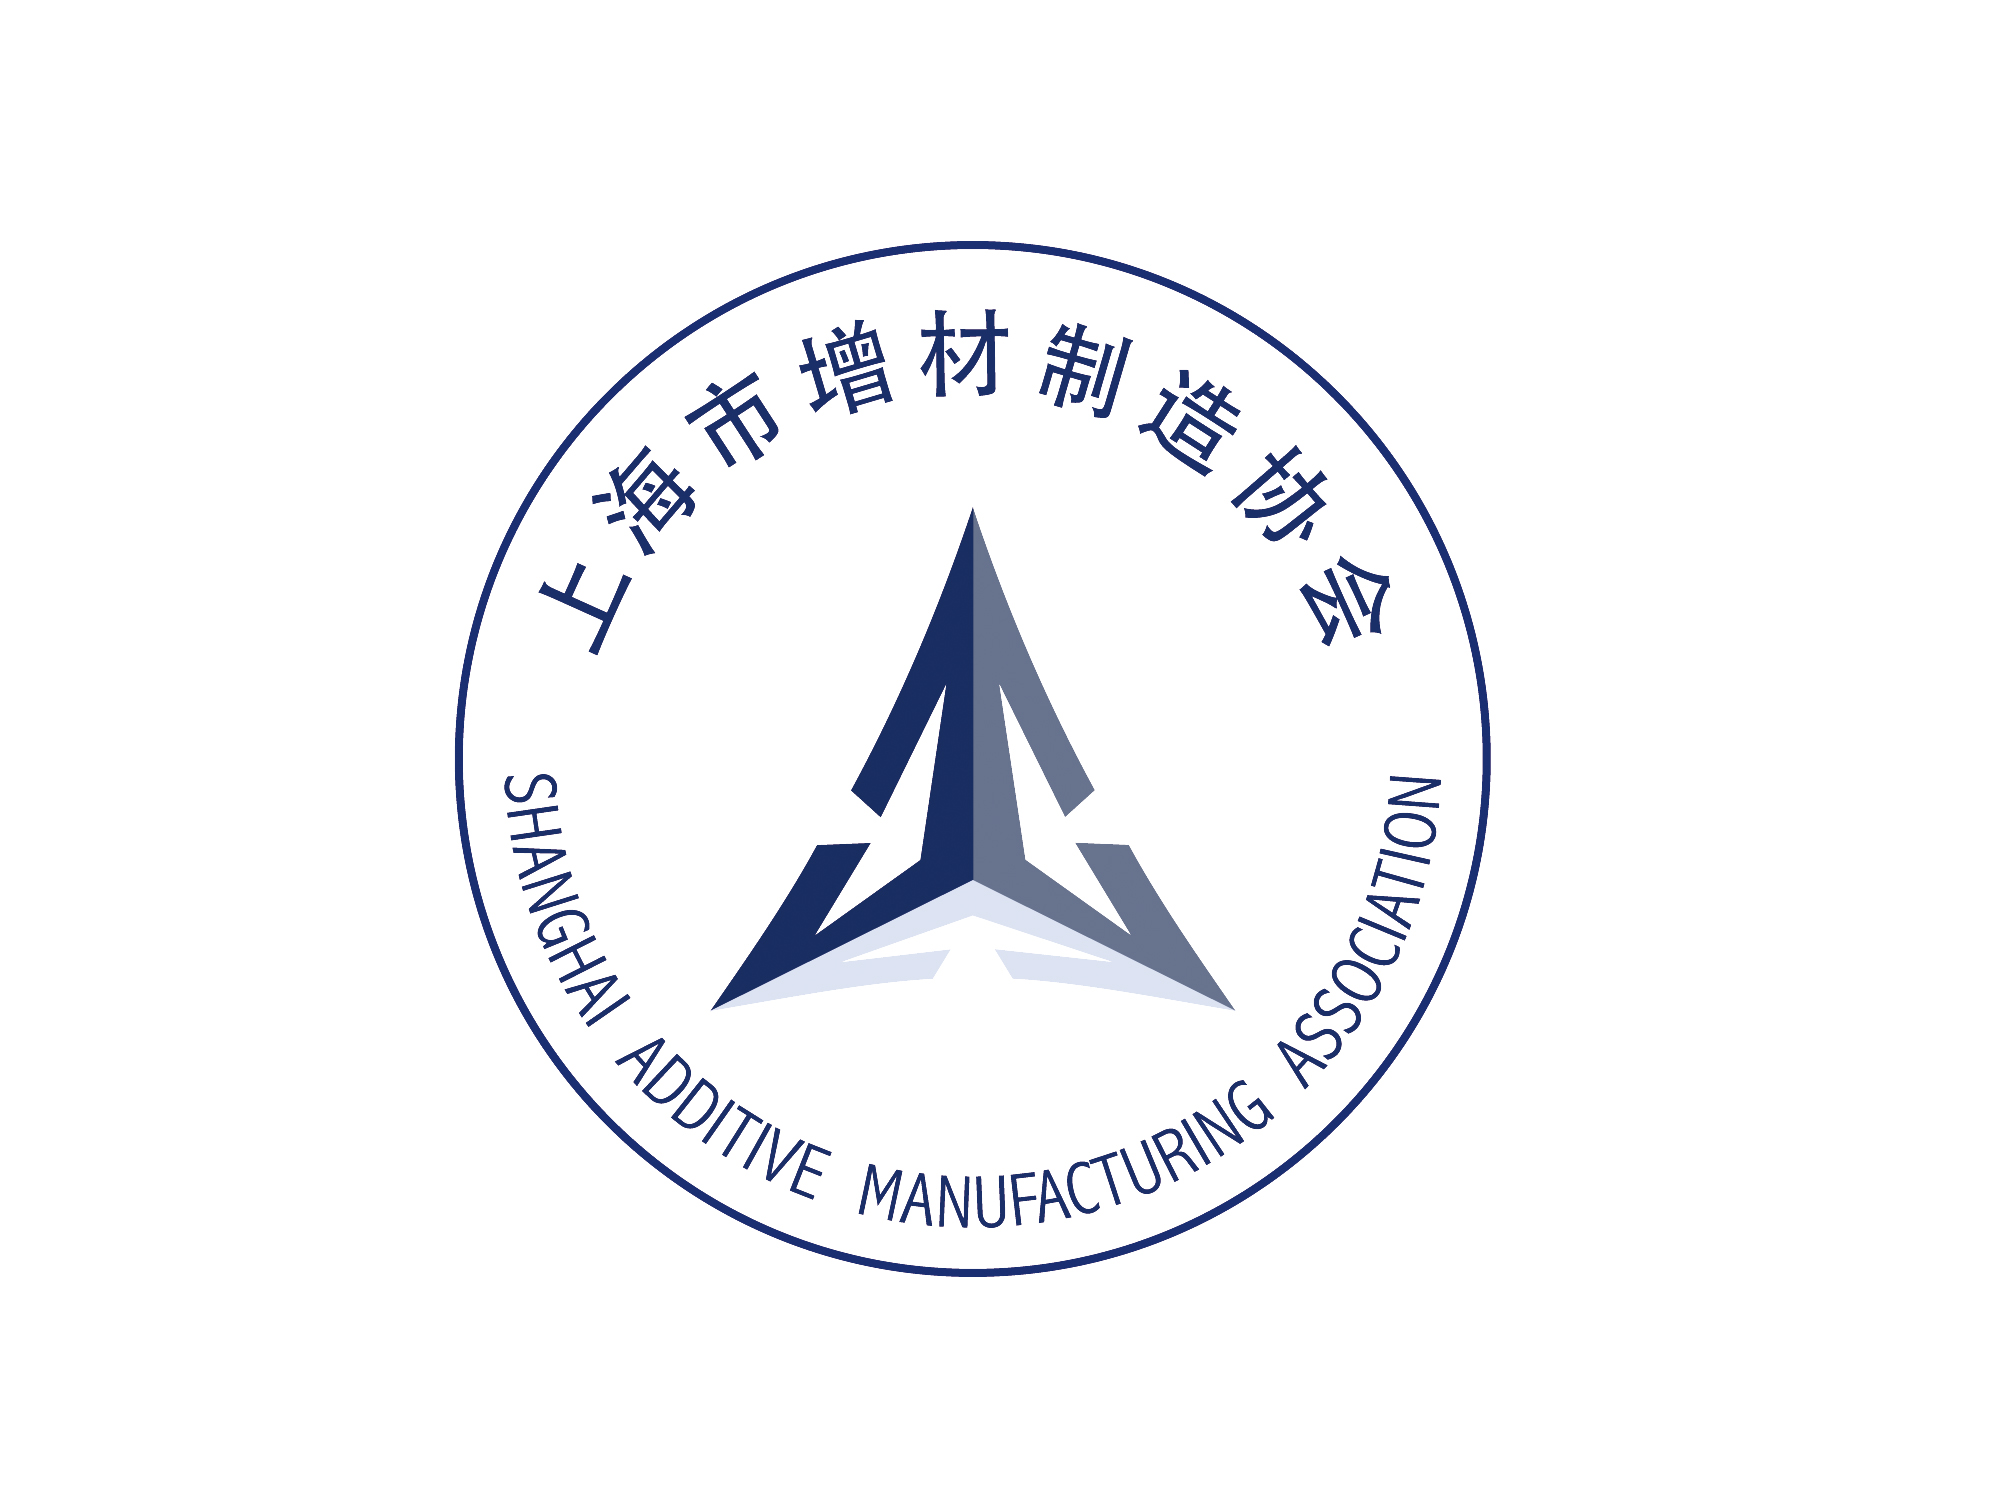 上海市增材製造協會